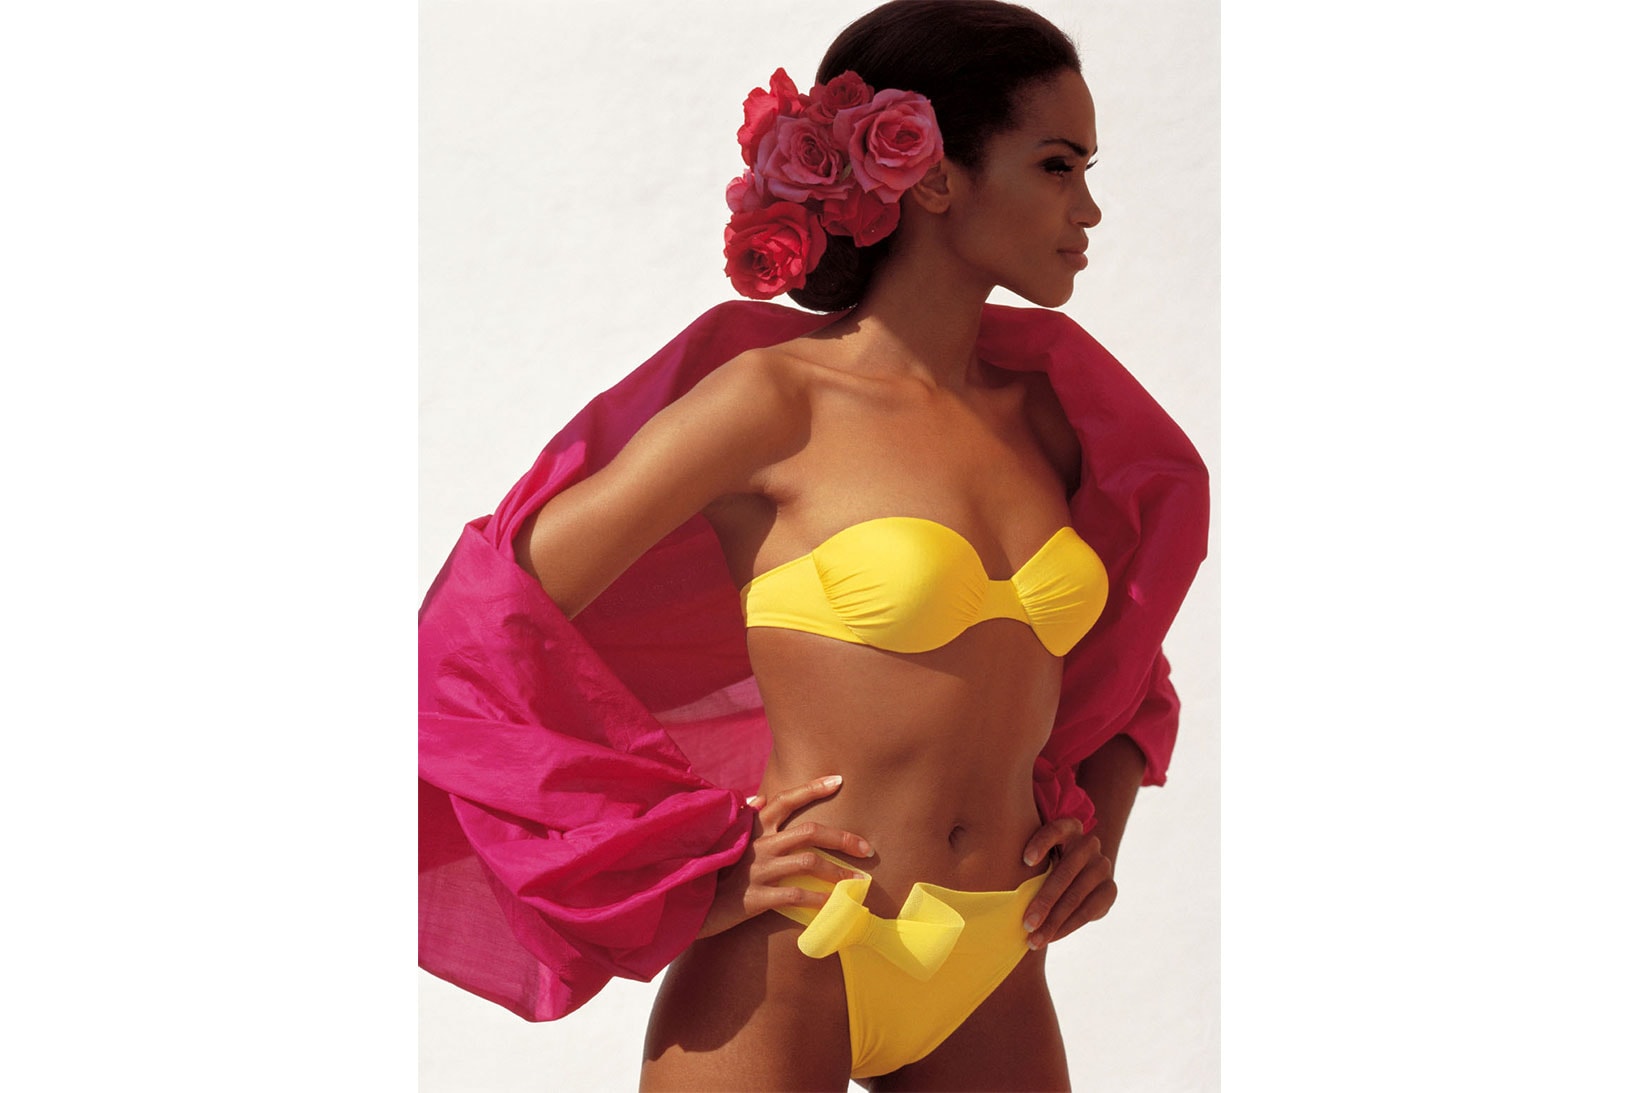 la perla campaign images archives 1950s 2000s lingerie underwear 